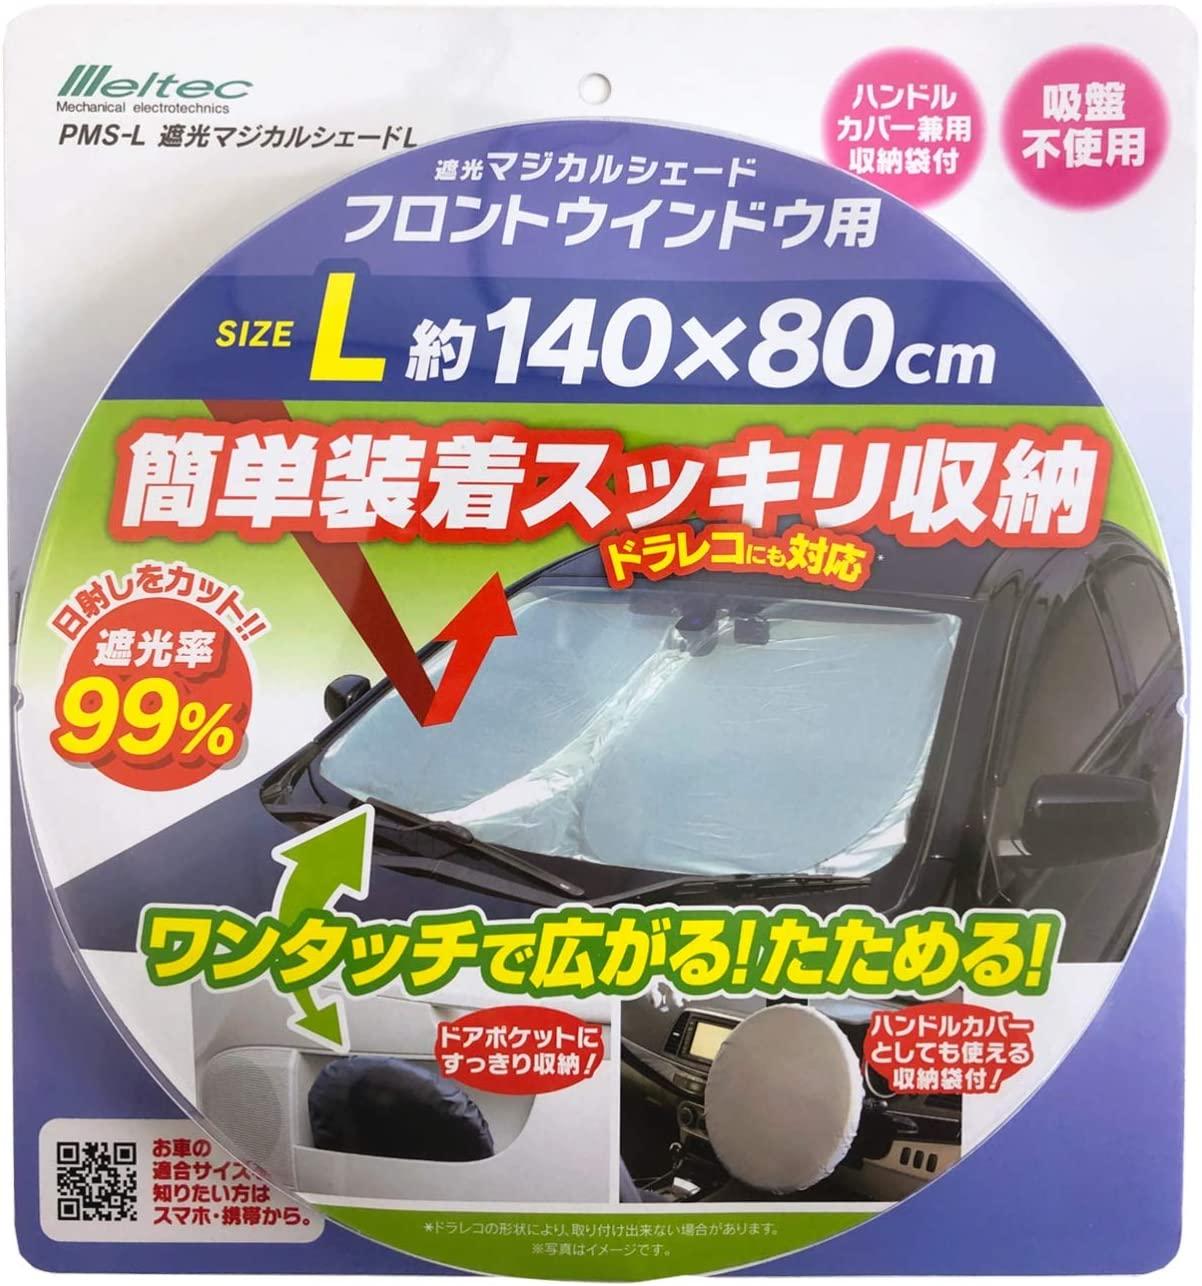 ドラレコがあってもフロントガラスをすっぽり覆って駐車中の温度上昇対策ができる折りたたみシェード ライフハッカー ジャパン